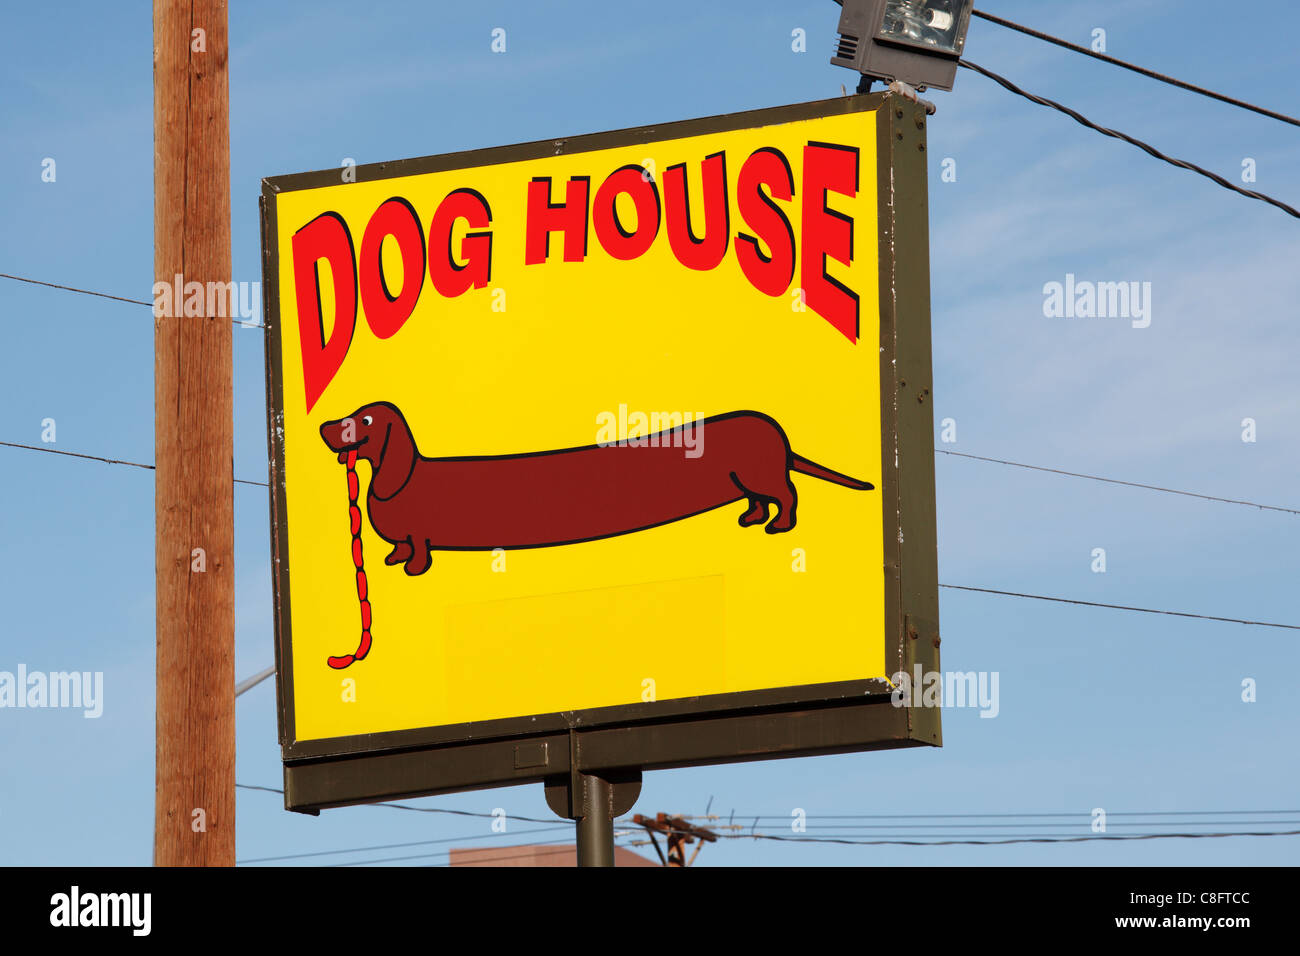 Dog House cafe sign - Albuquerque, New Mexico. Stock Photo